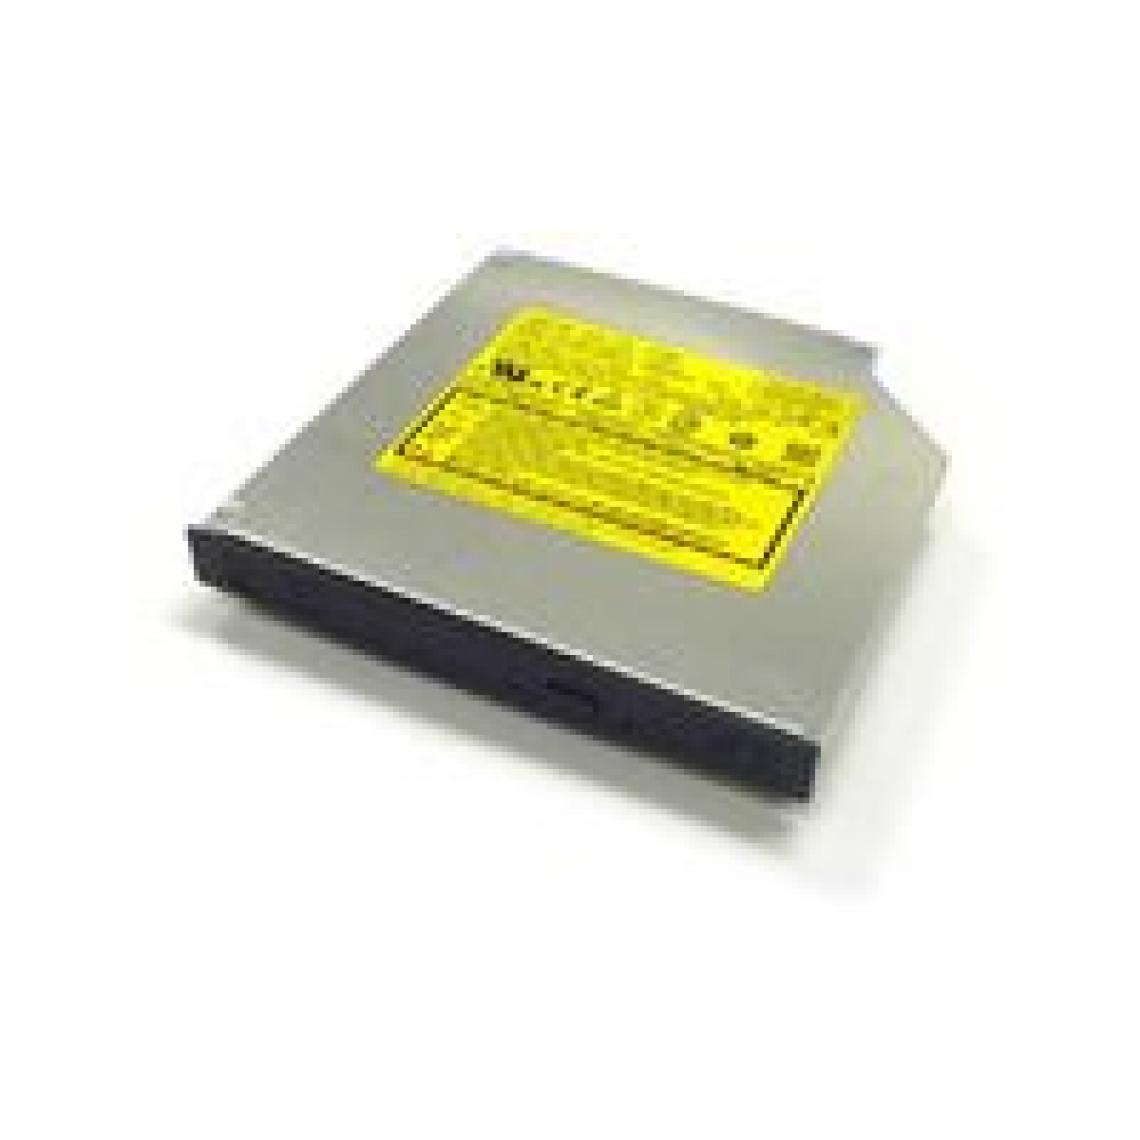 Inconnu - MicroStorage MSI-DVDRW/SATA lecteur de disques optiques - Accessoires Boitier PC